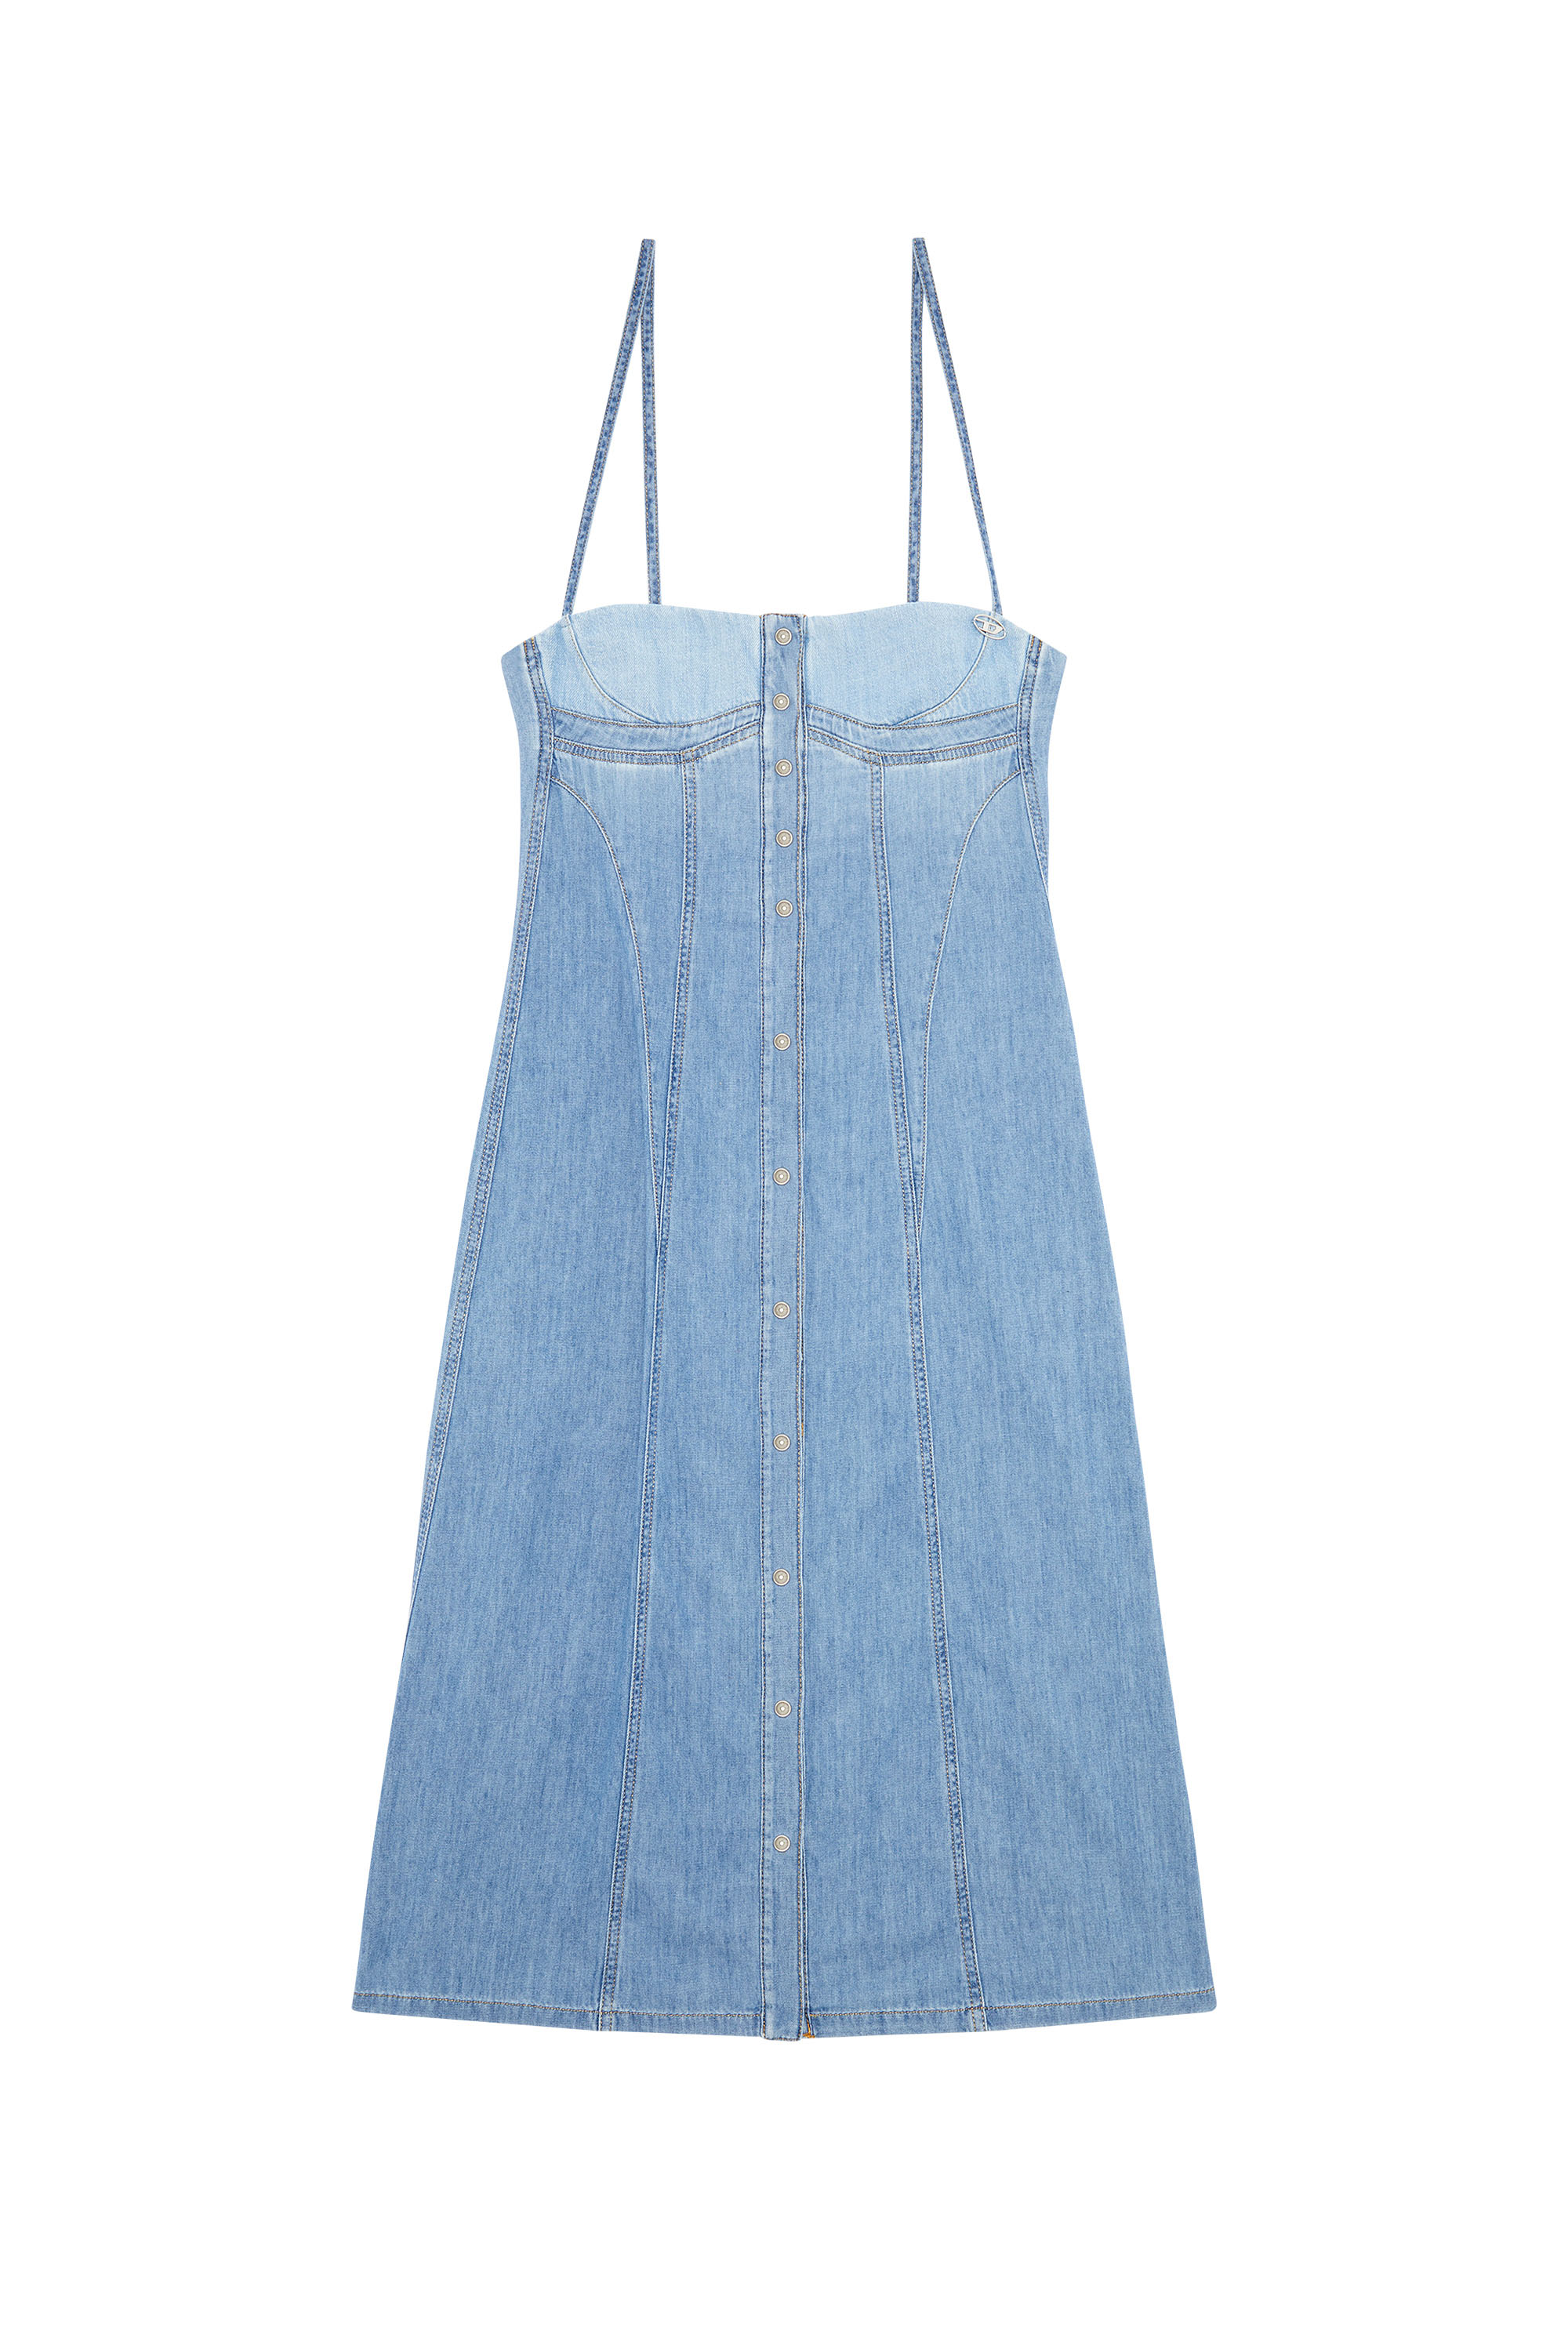 Diesel - DE-DRESSY, Woman Strappy midi dress in fix denim in Blue - Image 4